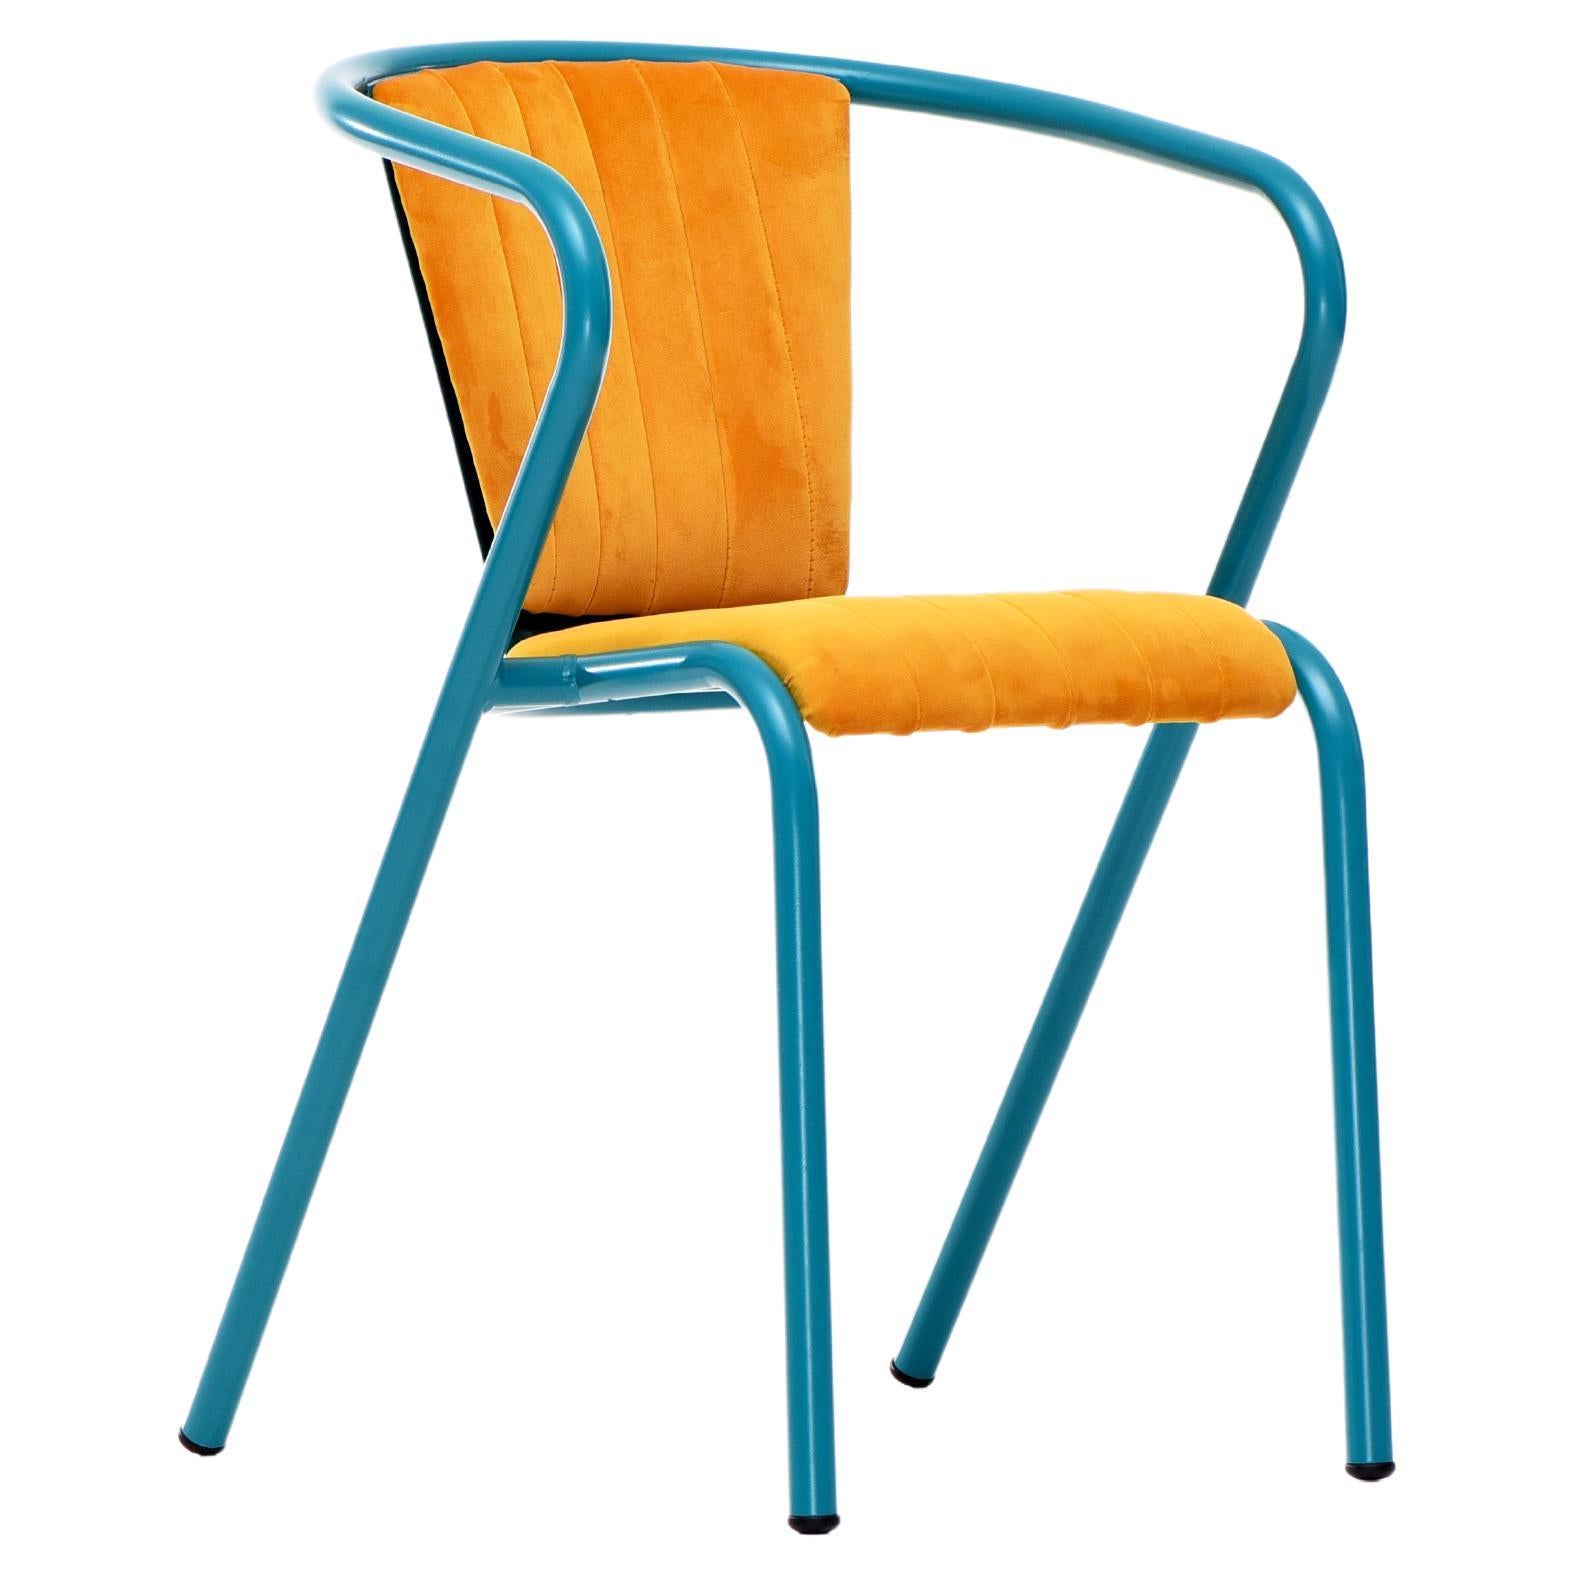 BICA-Sessel aus Stahl in Wasserblau, Polsterung aus weichem Samt